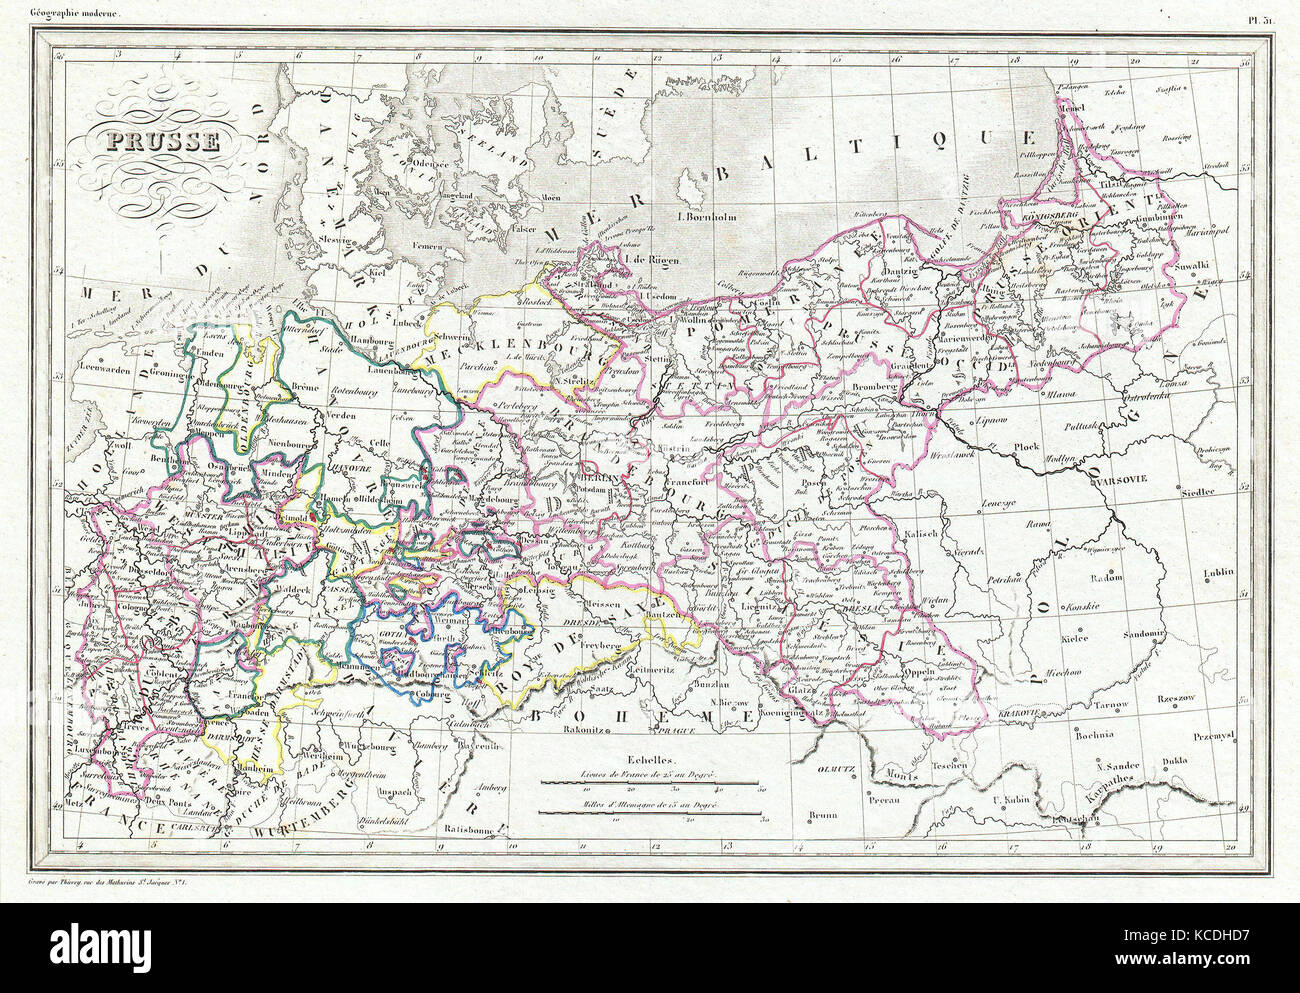 1843, Malte-Brun Mapa de Prusia, Alemania Foto de stock